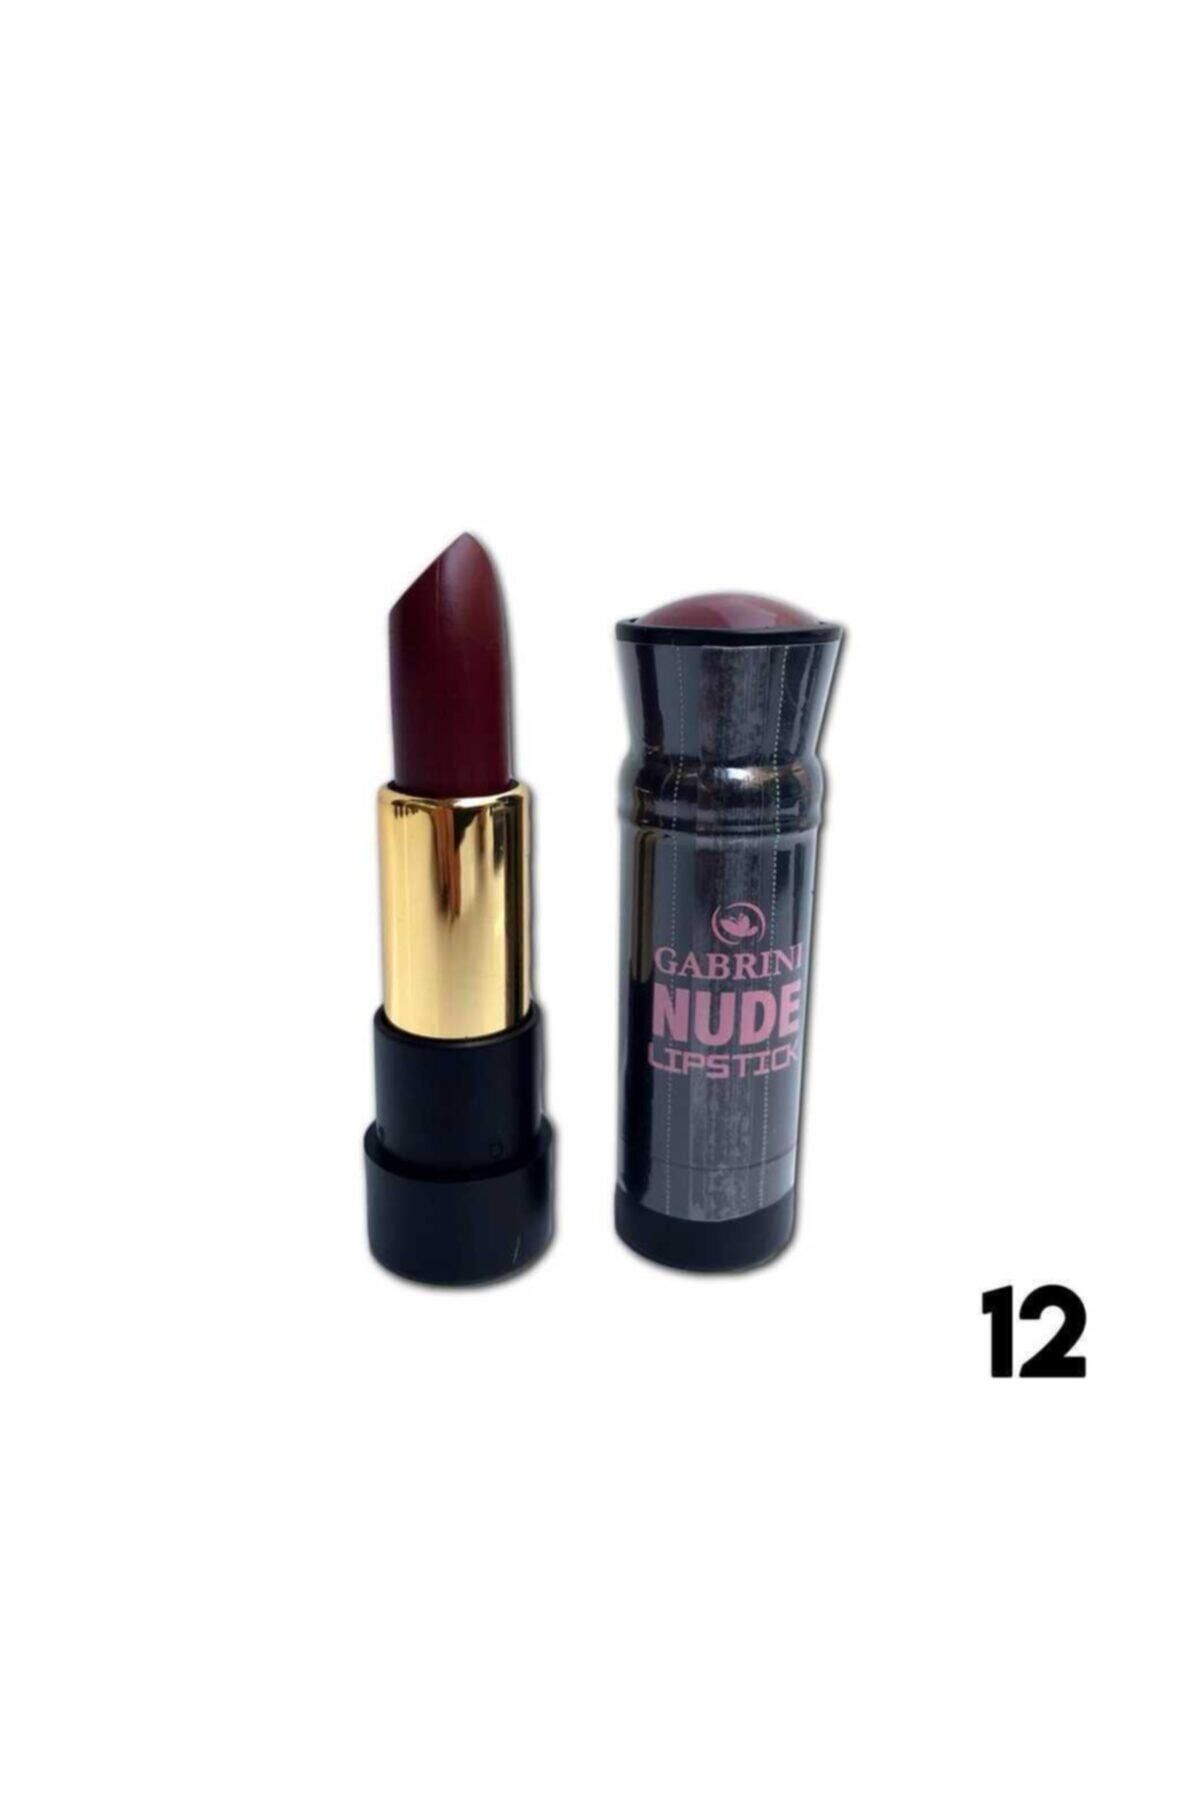 Gabrini Nude Mat Ruj - Matte Nude Lipstick 12